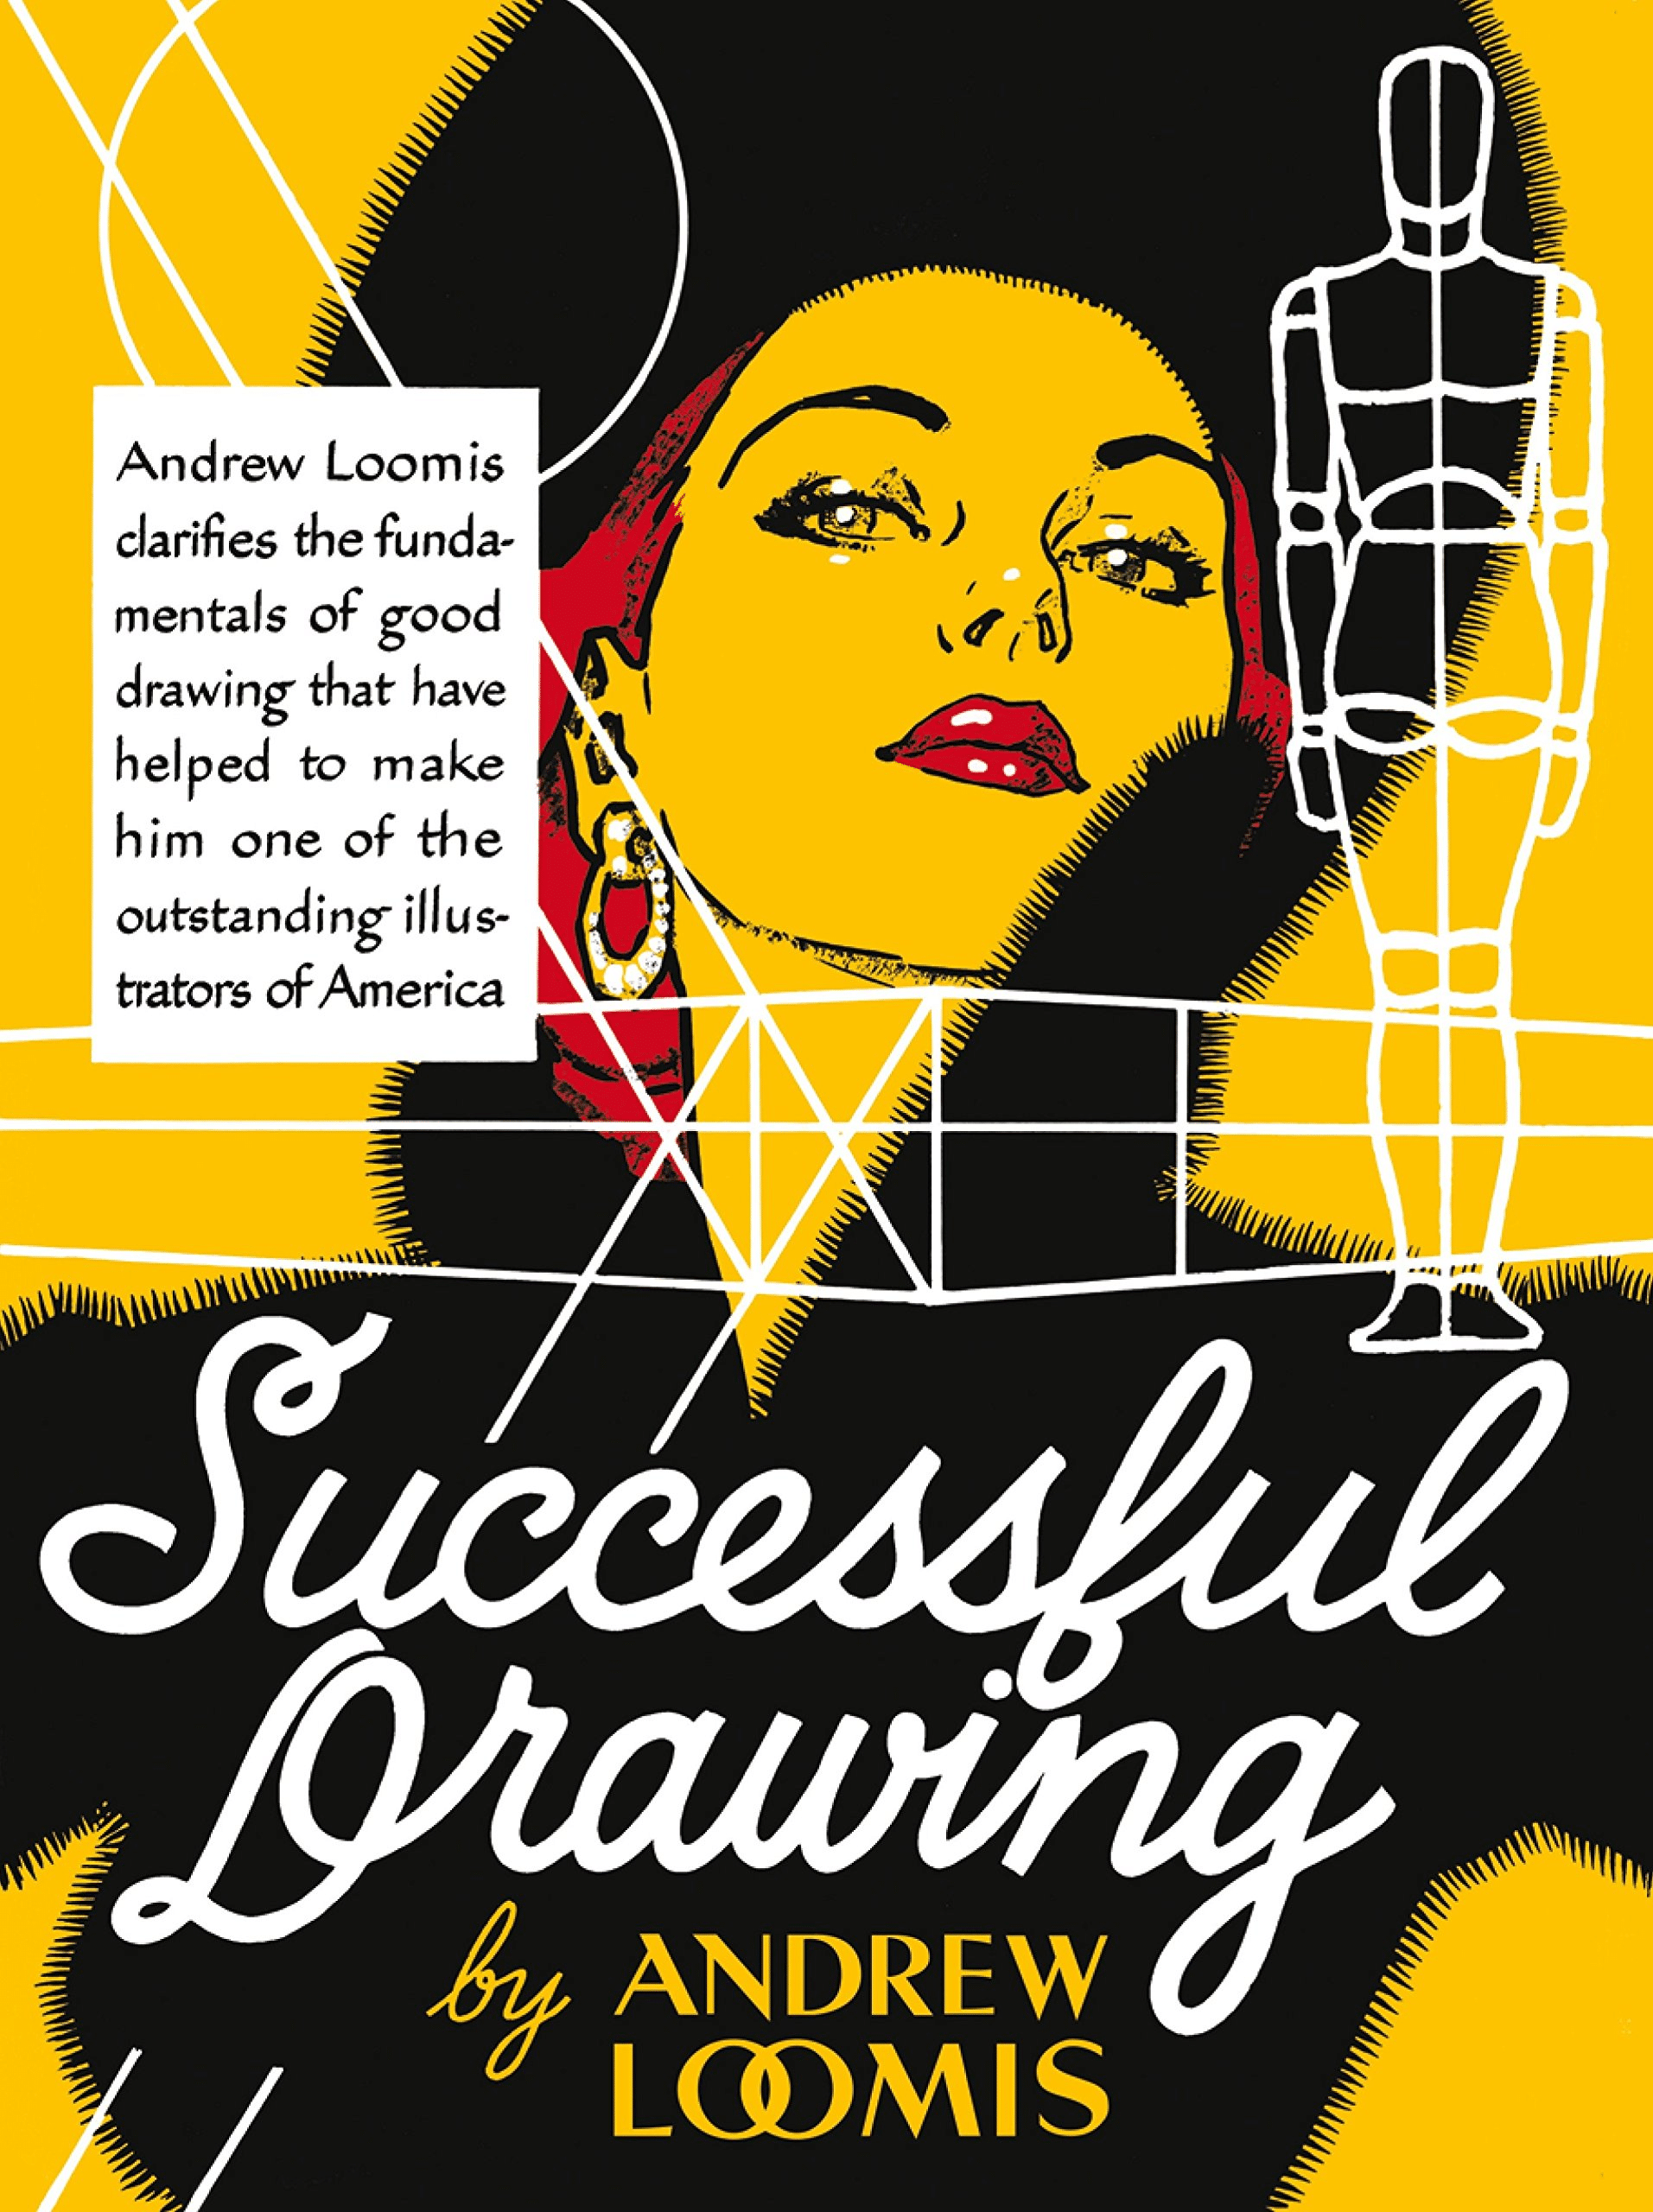 Portada del libro 'Successful Drawing' de Andrew Loomis